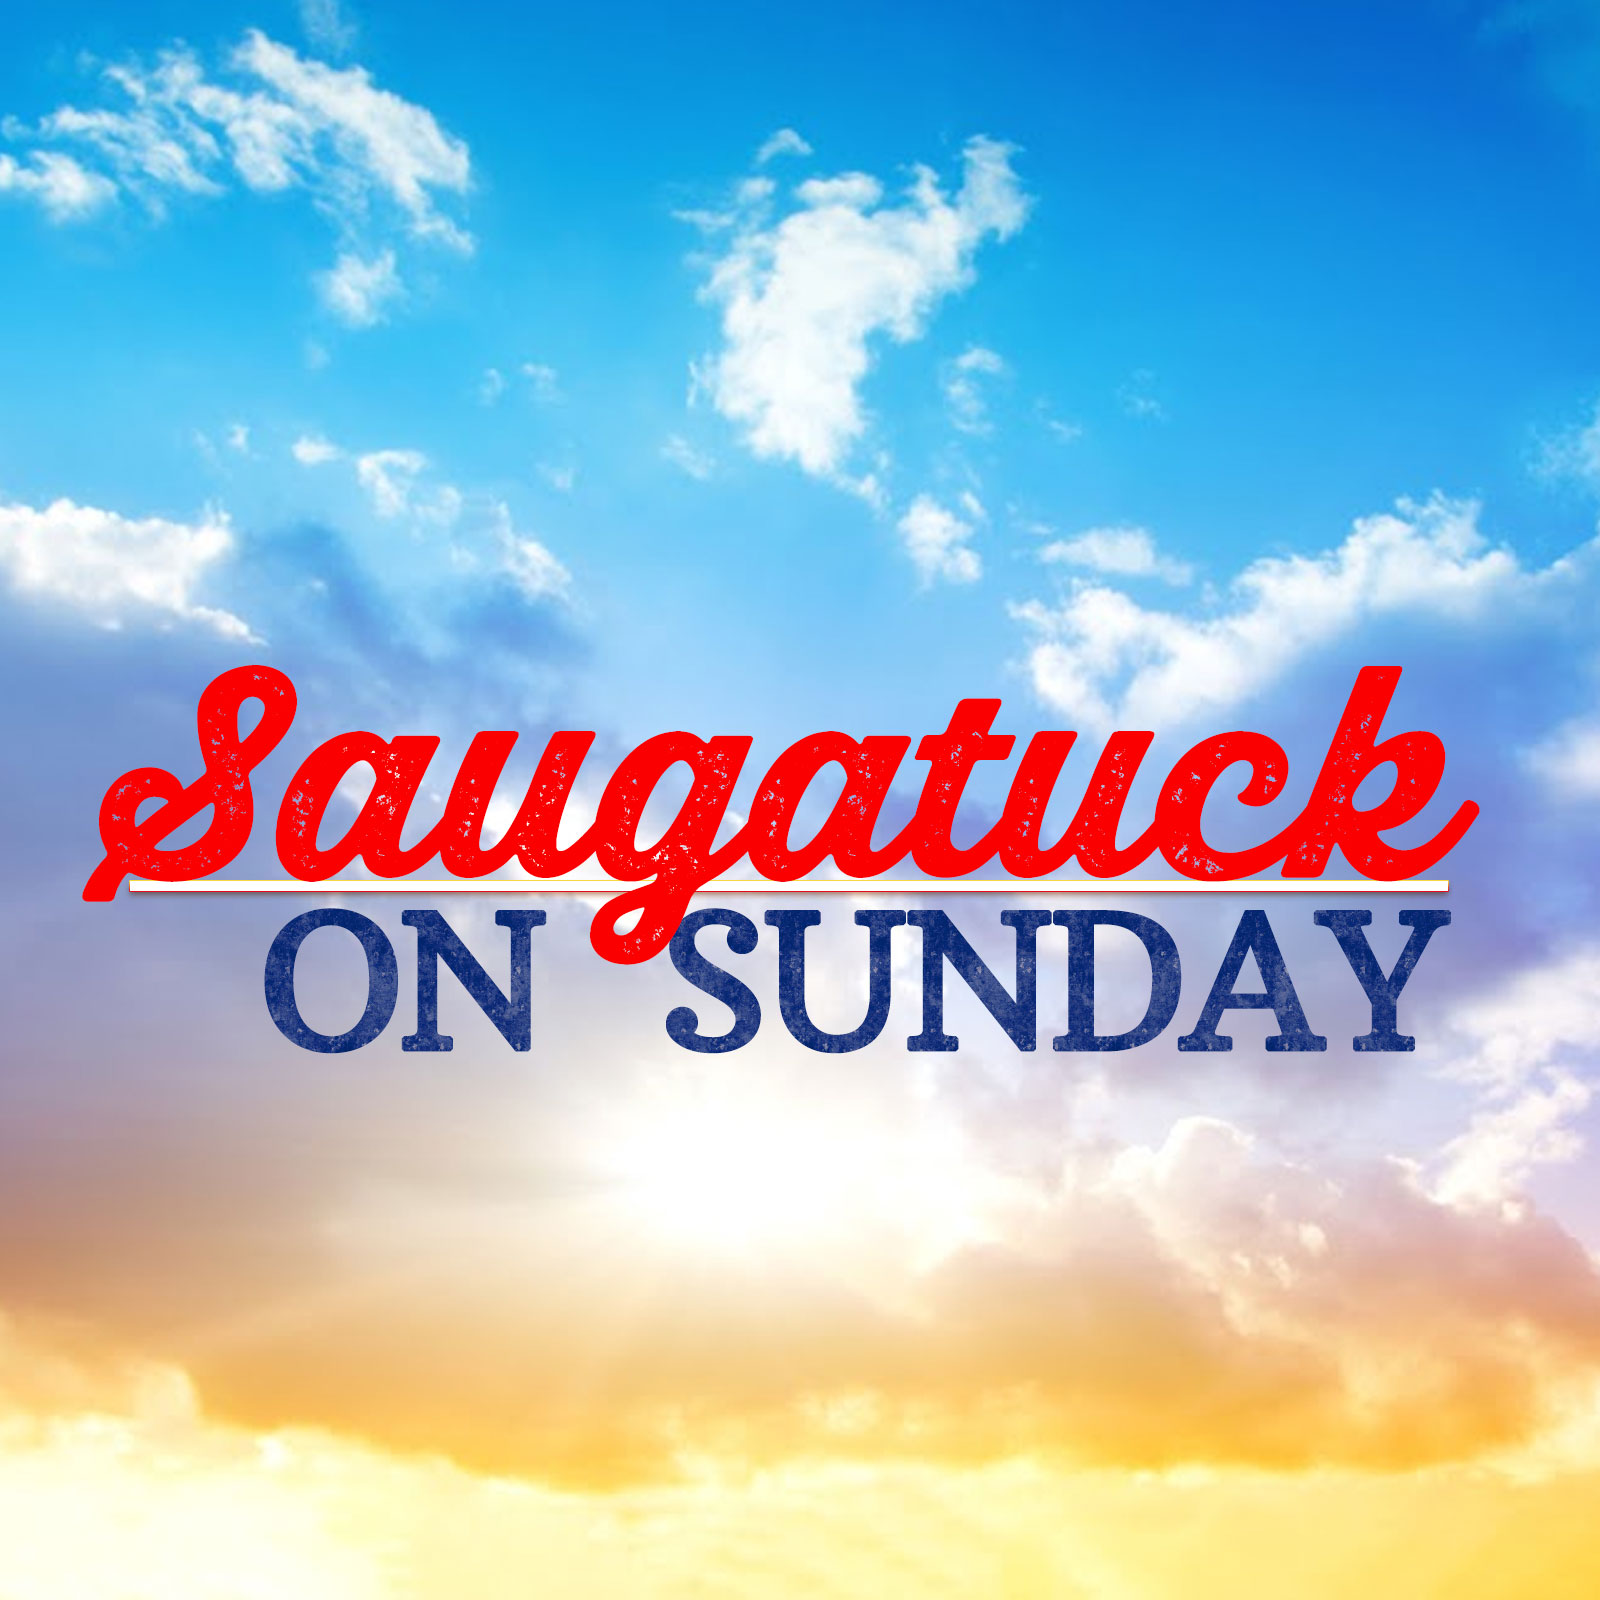 Saugatuck on Sunday 08-07-22